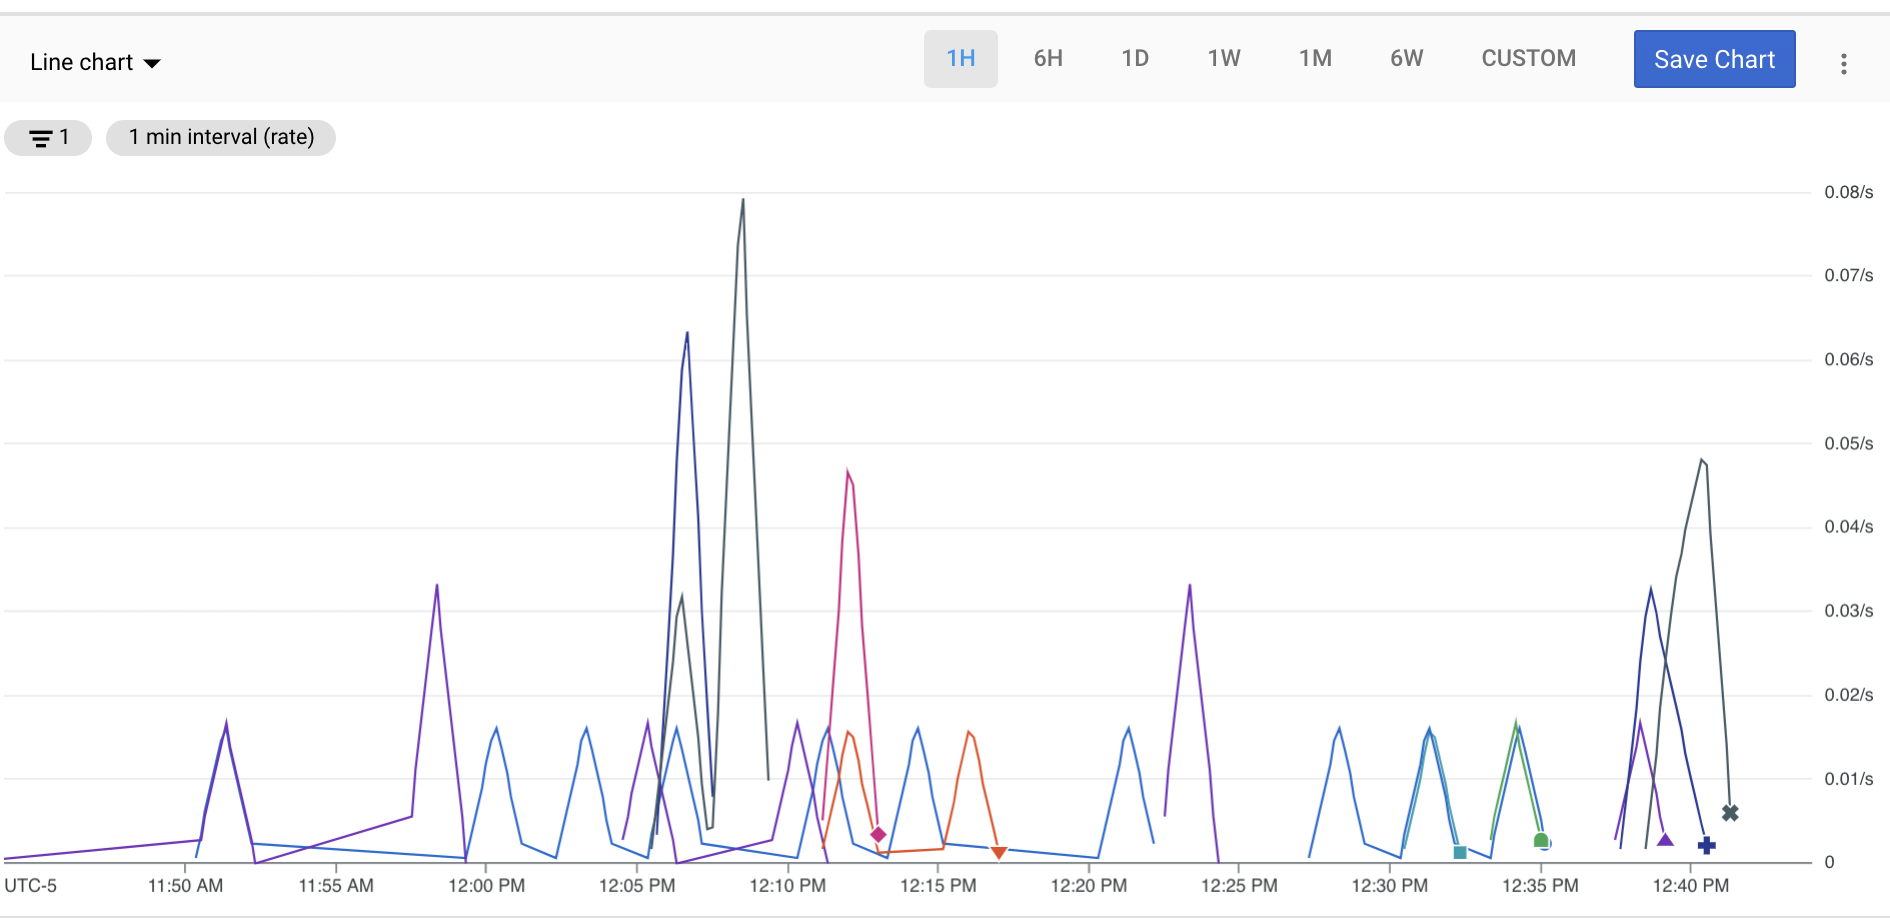 कस्टम लाइन चार्ट का स्क्रीनशॉट, जिसमें एपीआई की संख्या दिखाई गई है. चार्ट में एक घंटे से लेकर छह हफ़्ते तक का डेटा या अपनी पसंद के मुताबिक समयसीमा दिख सकती है.